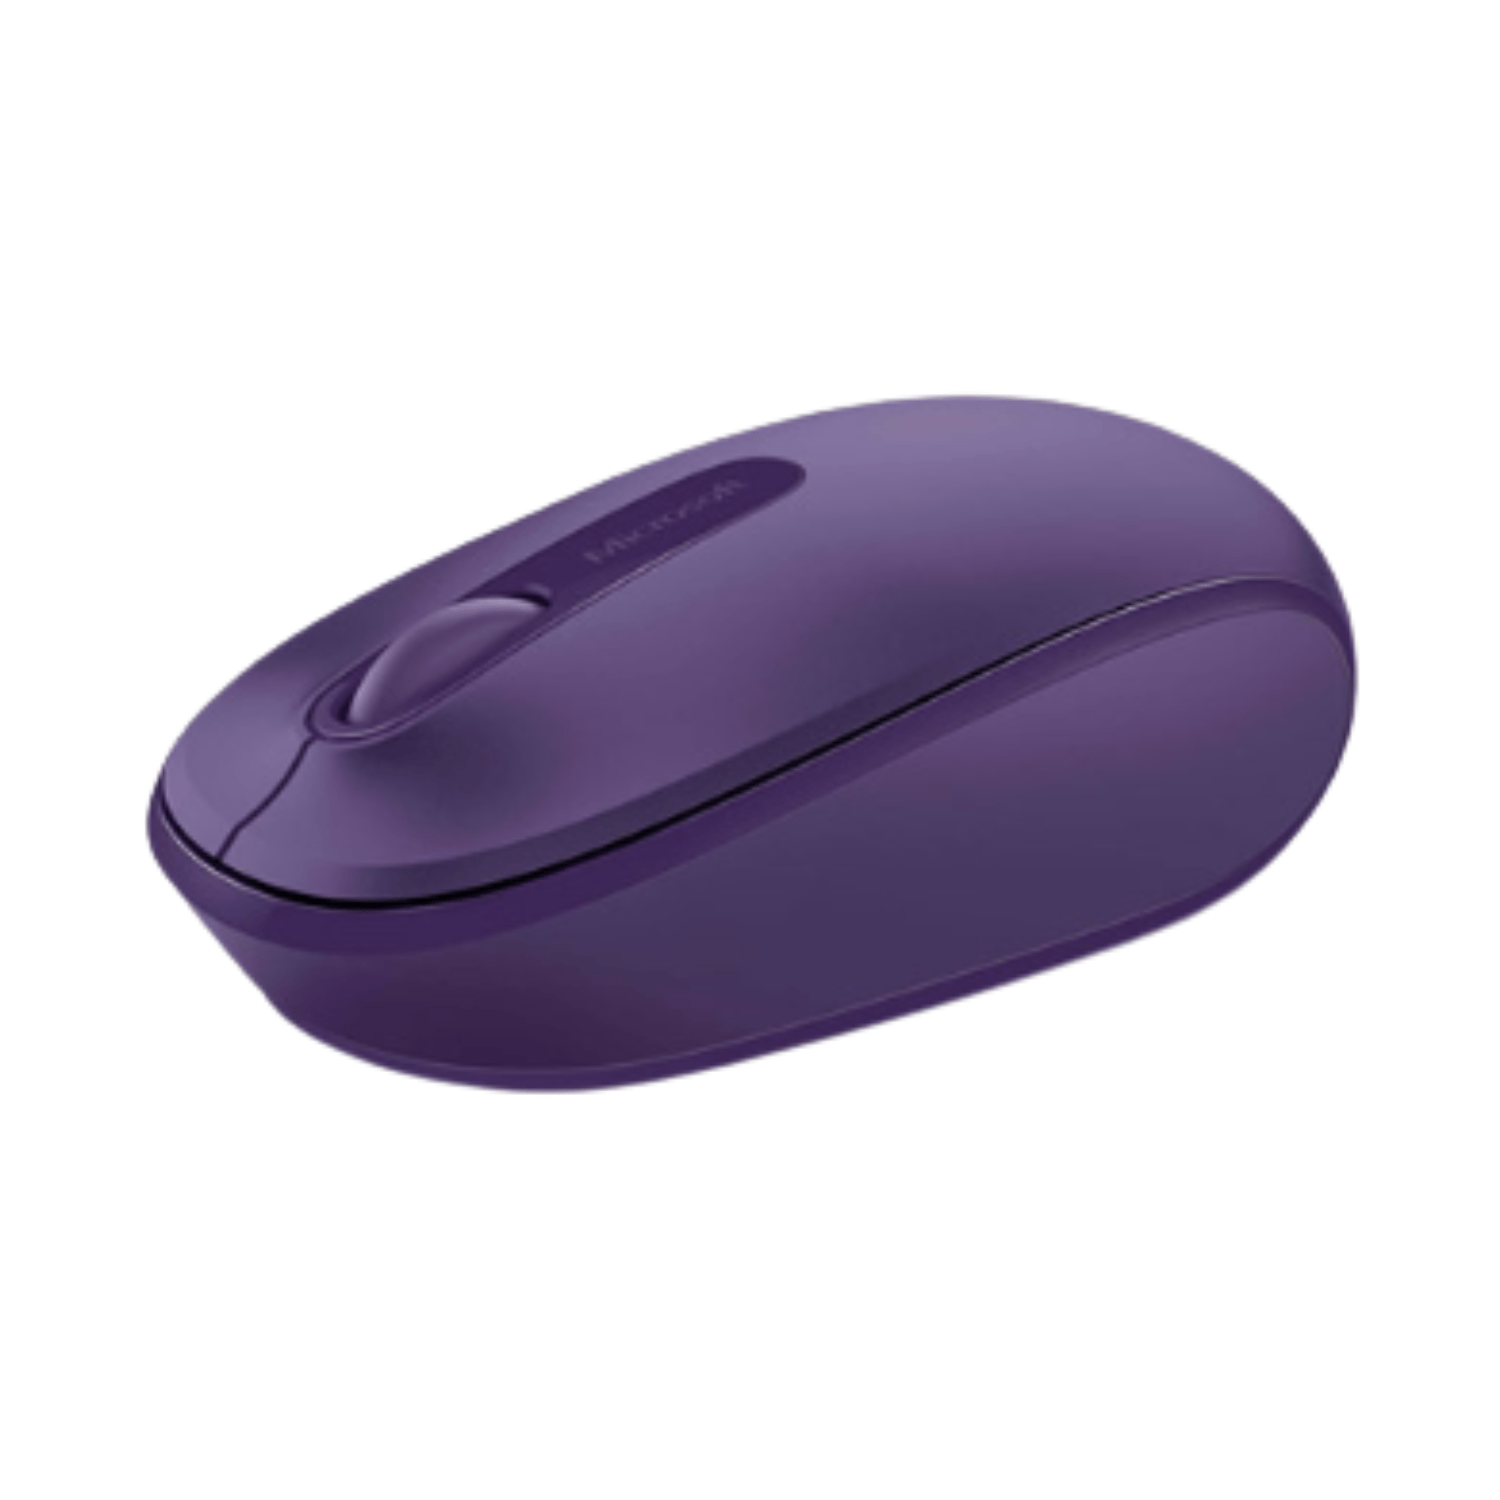 Mouse Inalambrico Color Morado Microsoft Mobile 1850 Receptor Usb Ergonomico